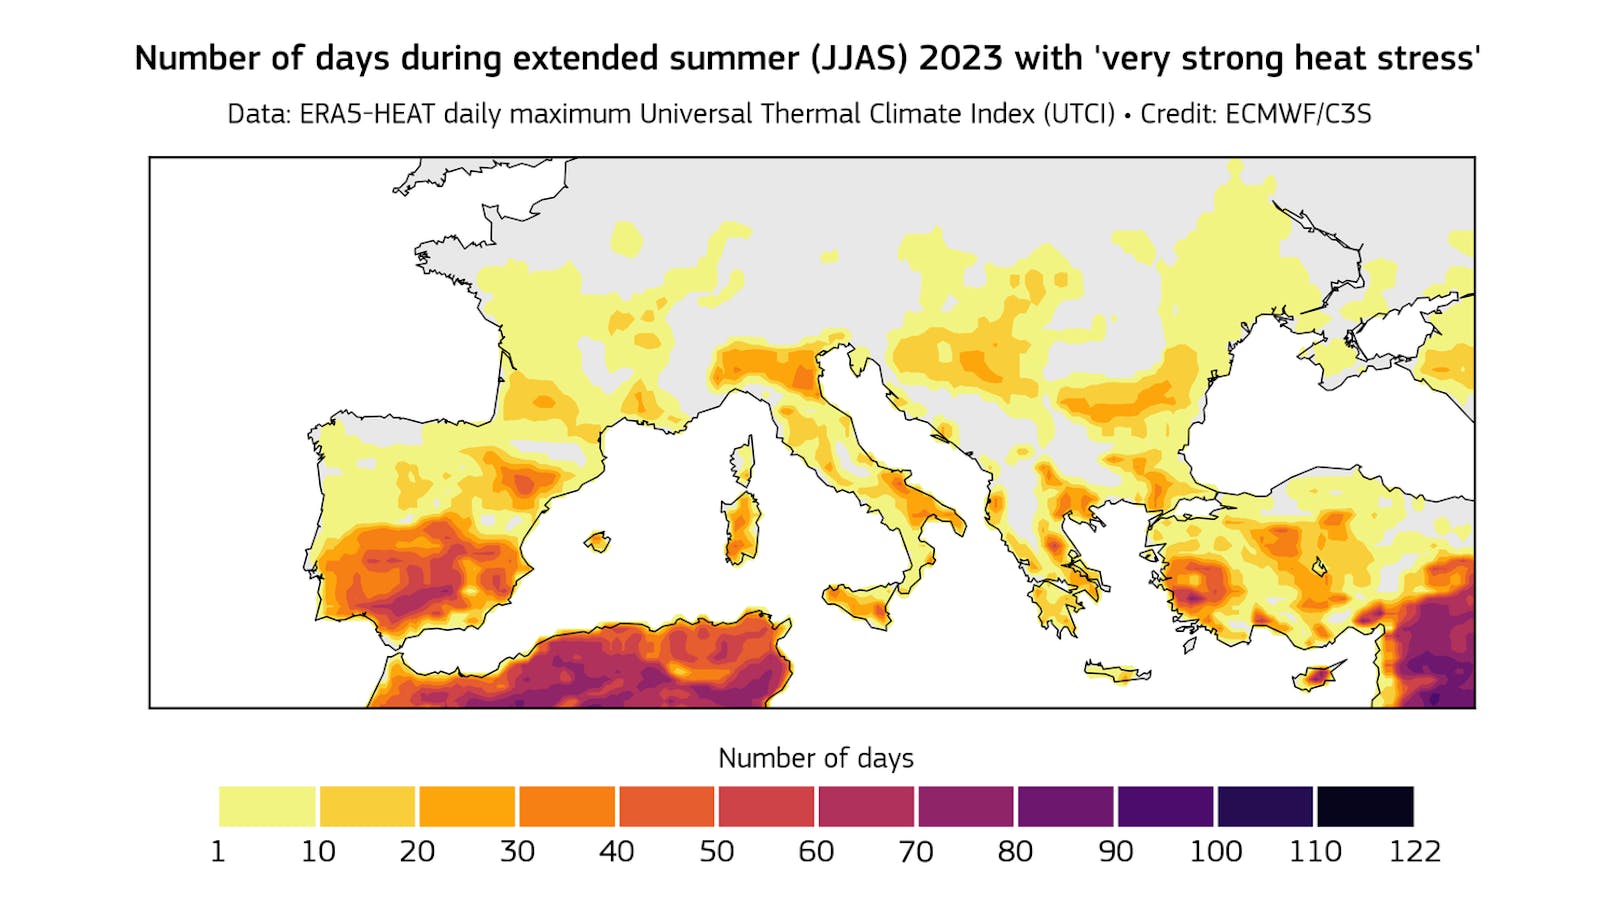 Anzahl der Tage mit "sehr starker Hitzebelastung" (zwischen 38°C und 46°C) im Juni, Juli, August und September 2023.